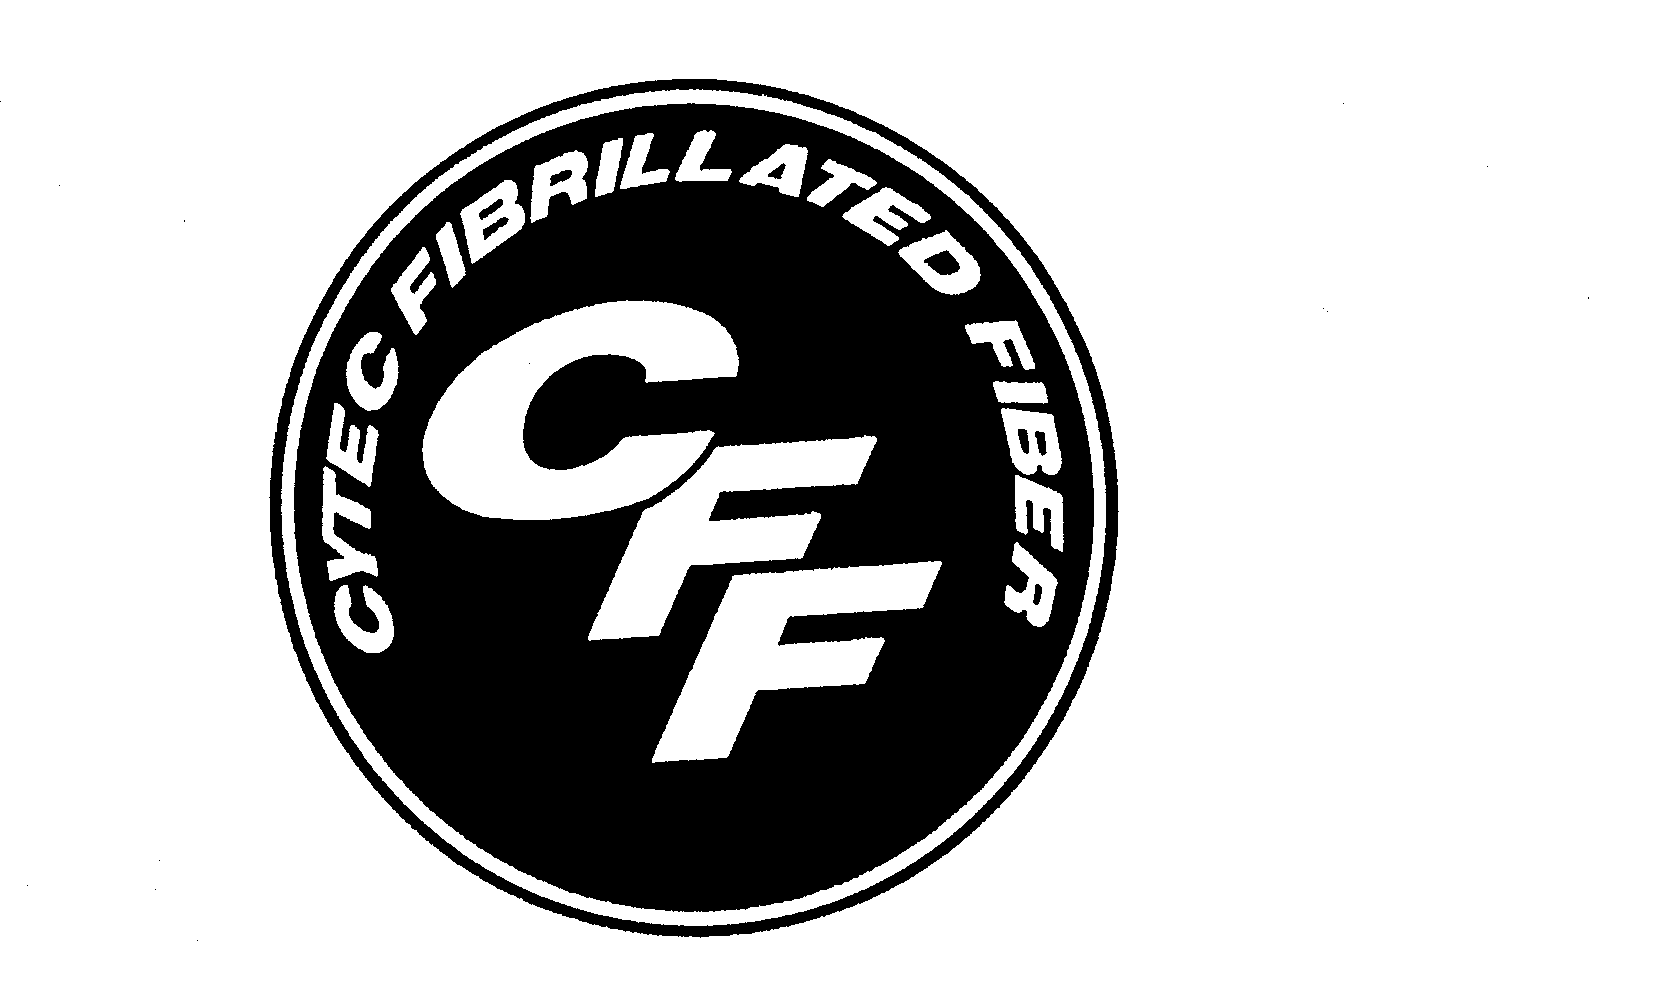  CFF CYTEC FIBRILLATED FIBER